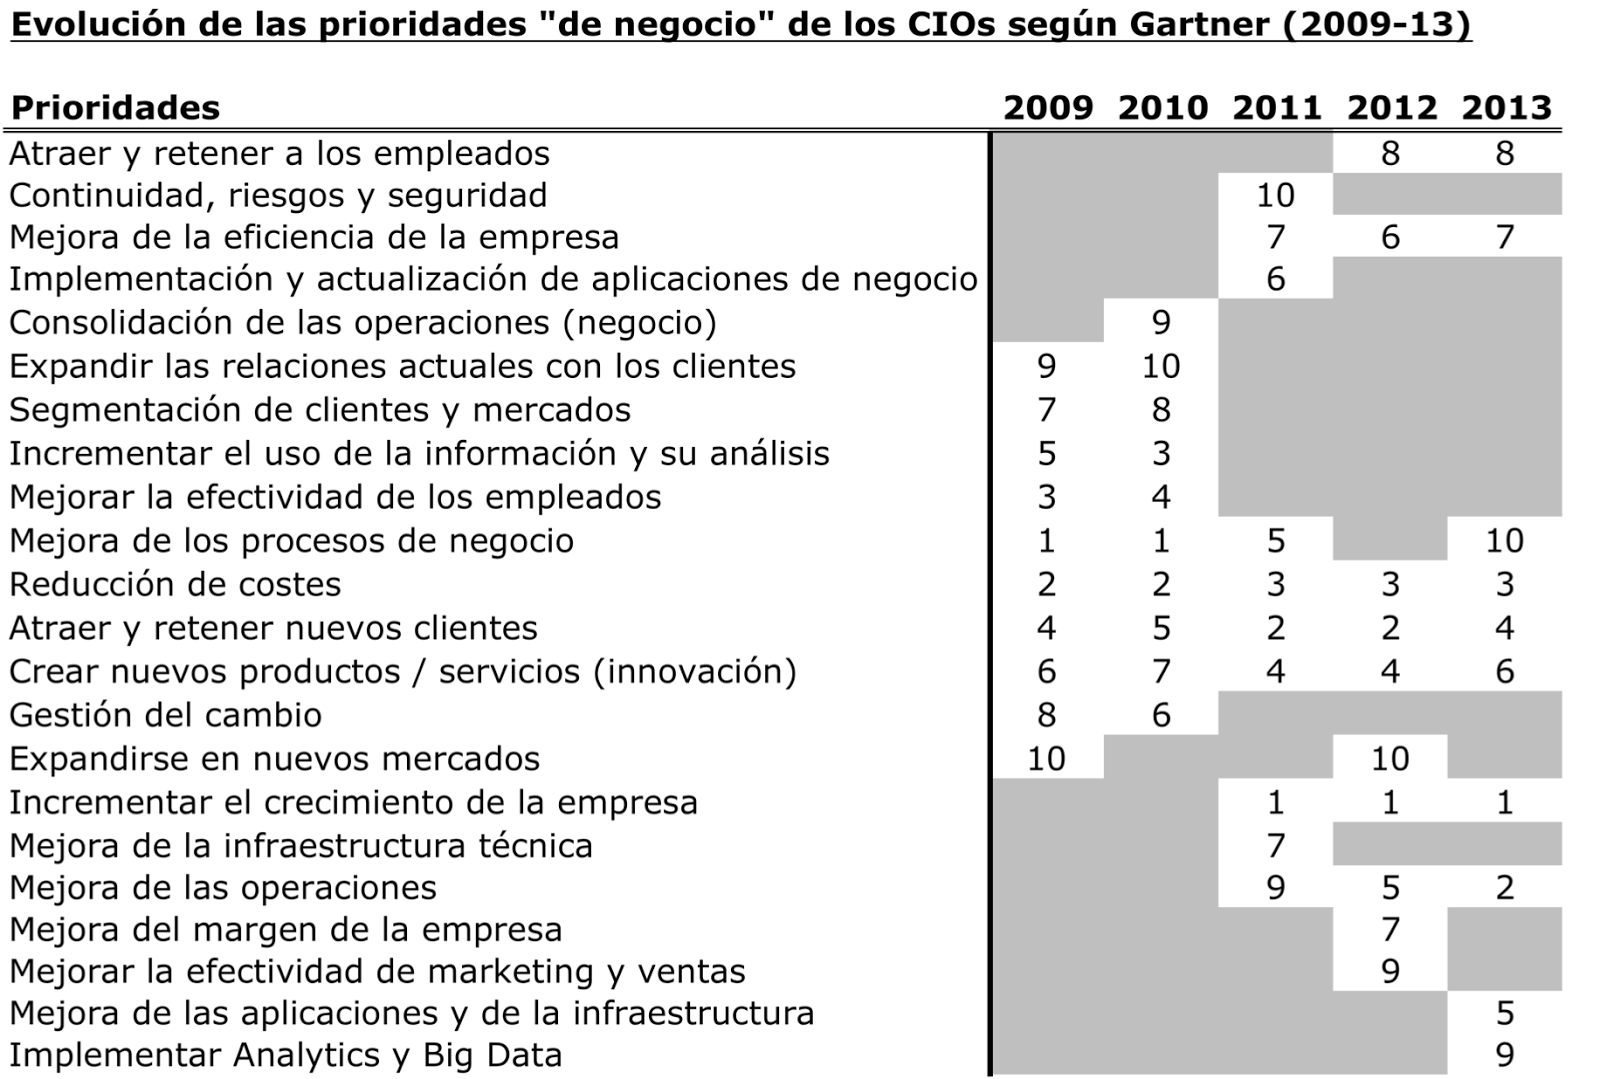 Evolución de las Prioridades de los CIOs en los últimos 5 años según Gartner (2009 - 2013)